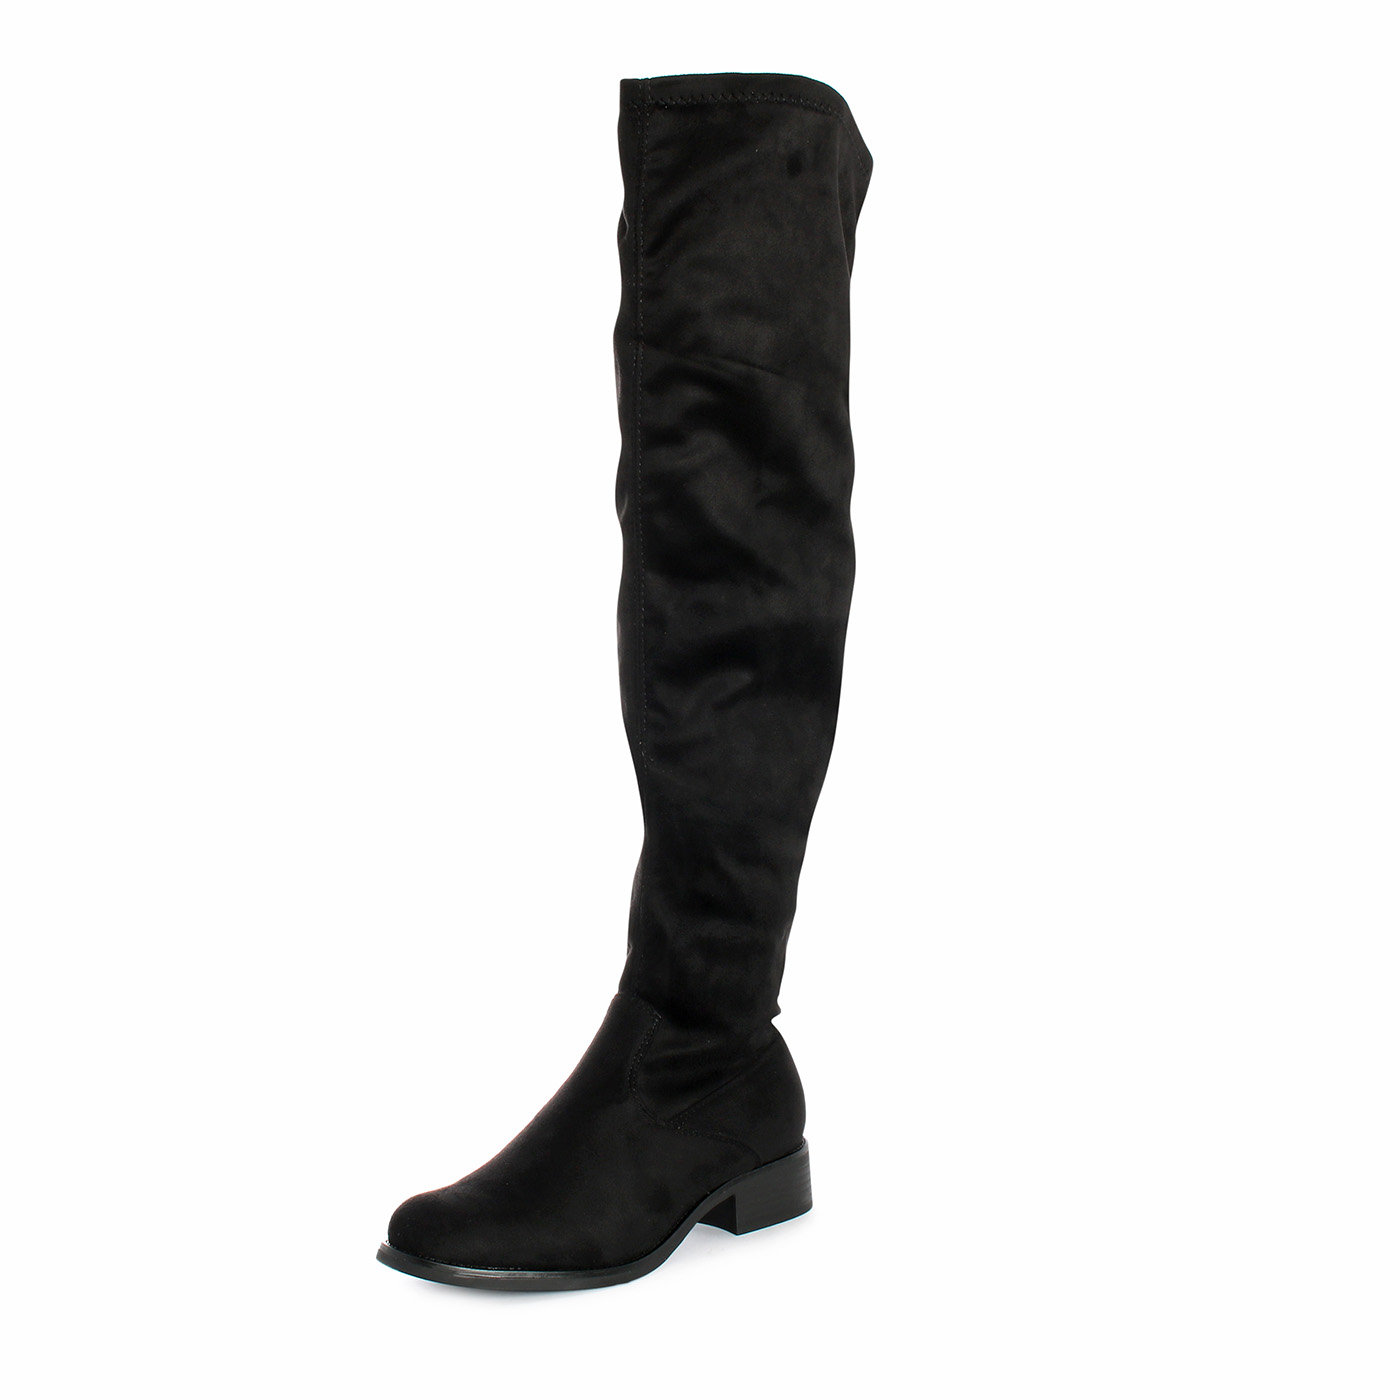 DADA - Stivali alti fino al ginocchio in tessuto - Nero - MitShopping -  Abbigliamento e scarpe